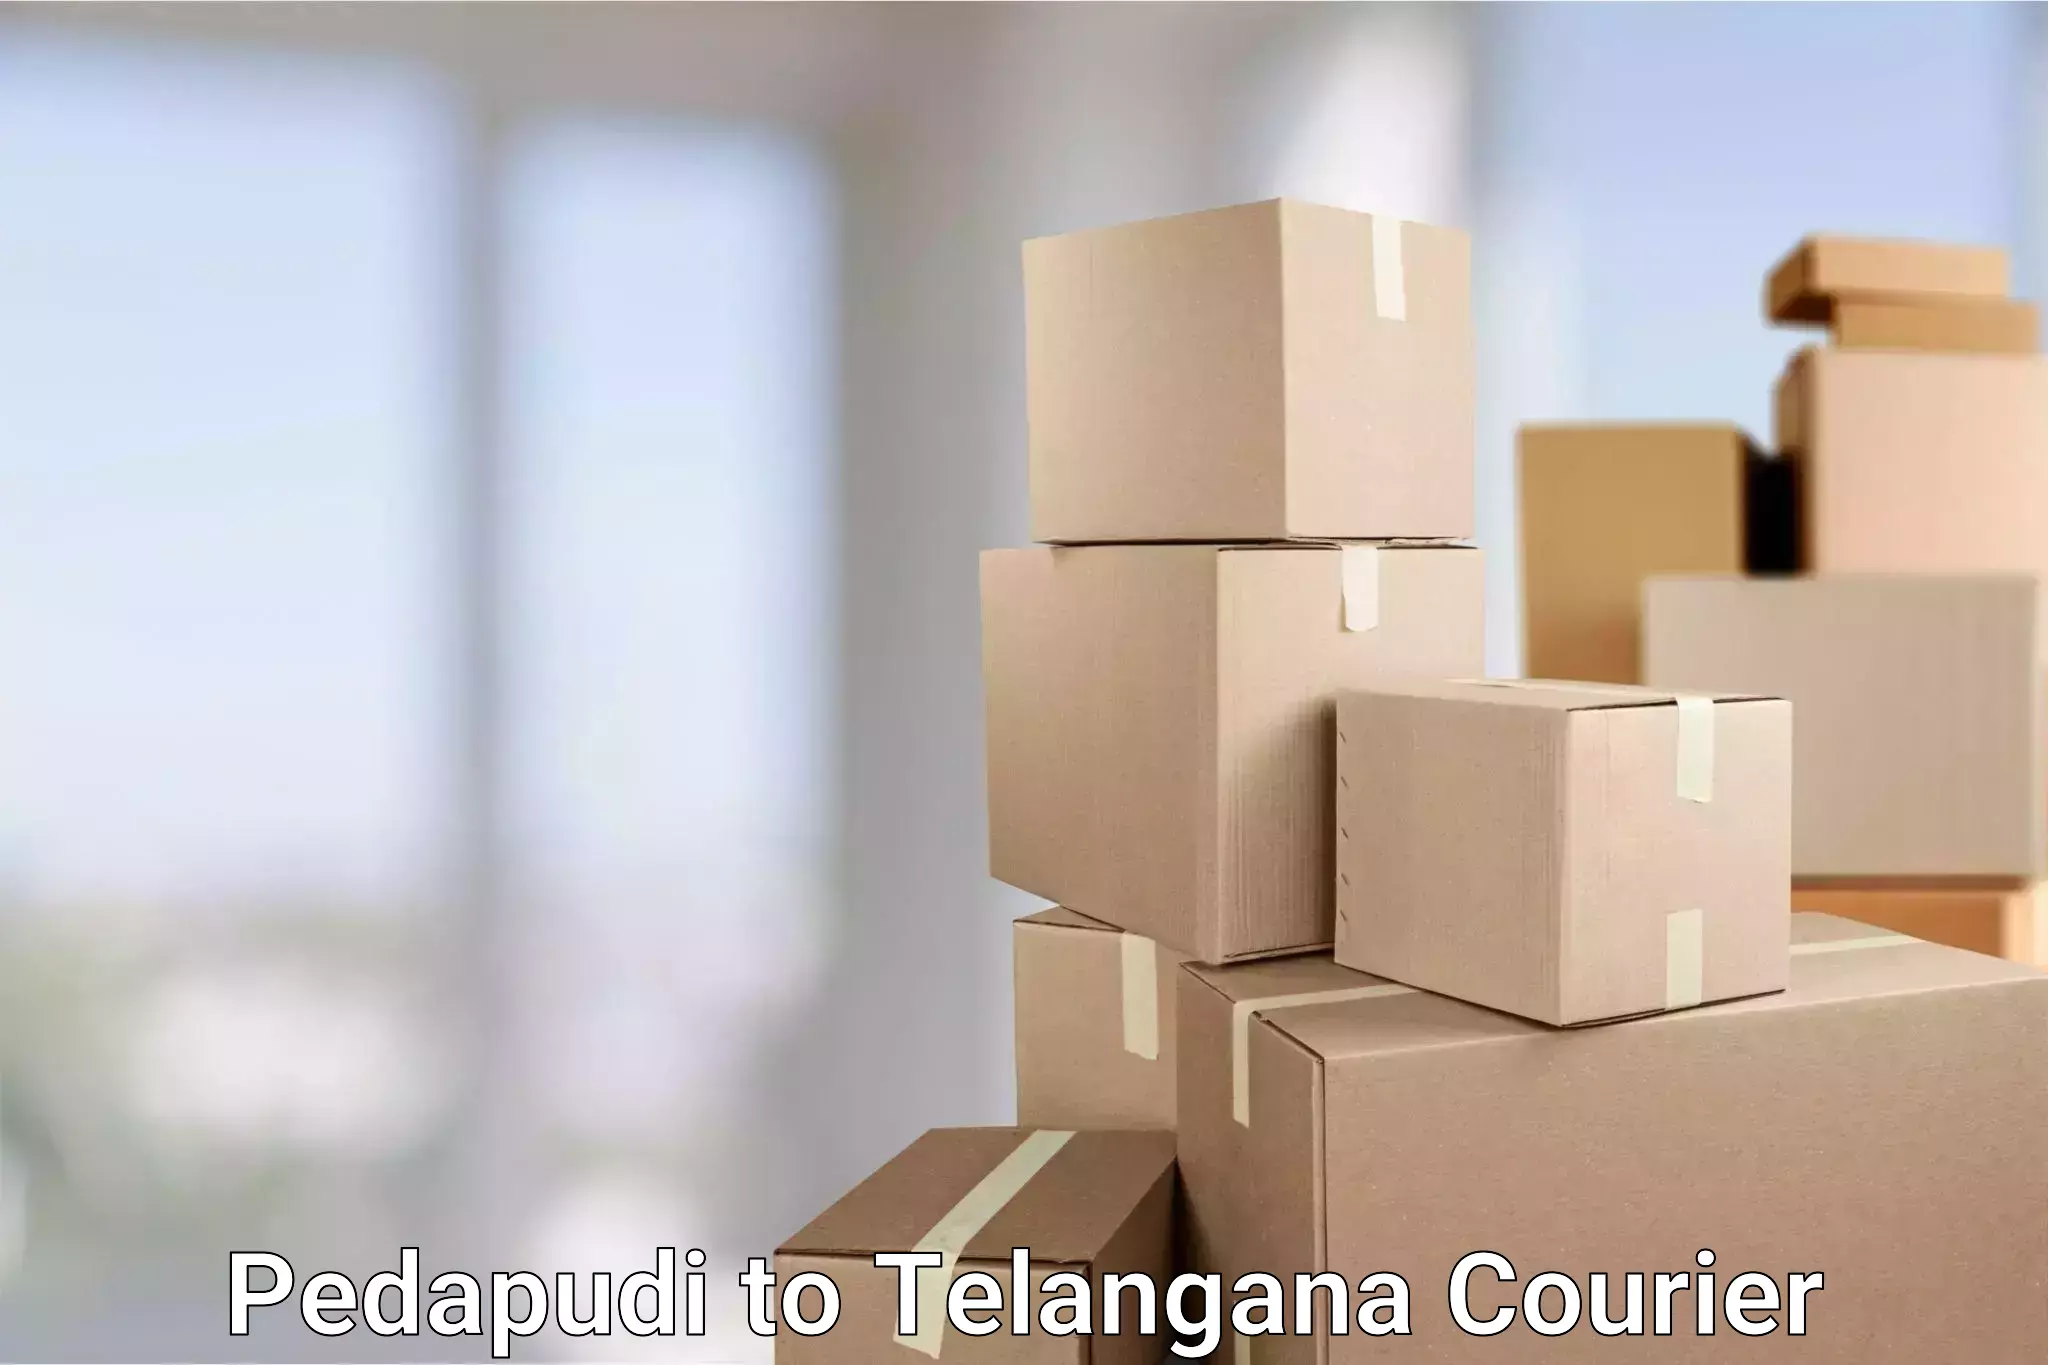 Express package handling Pedapudi to Dharmapuri Jagtial